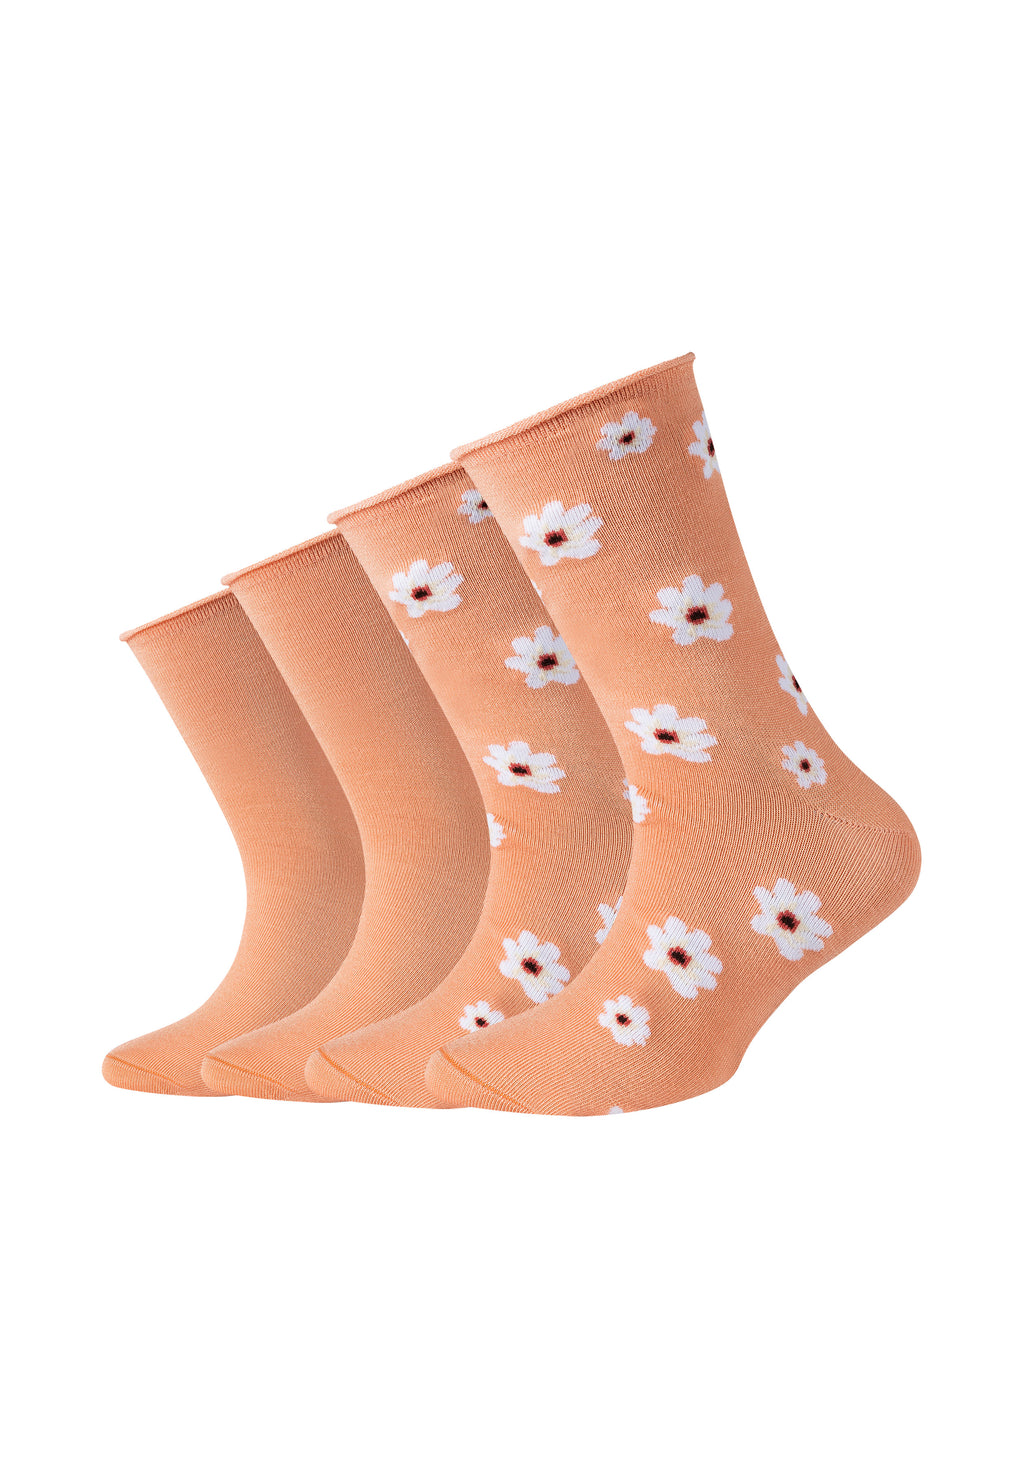 Kinder Socken Silky Touch Flower 4er Pack – ONSKINERY